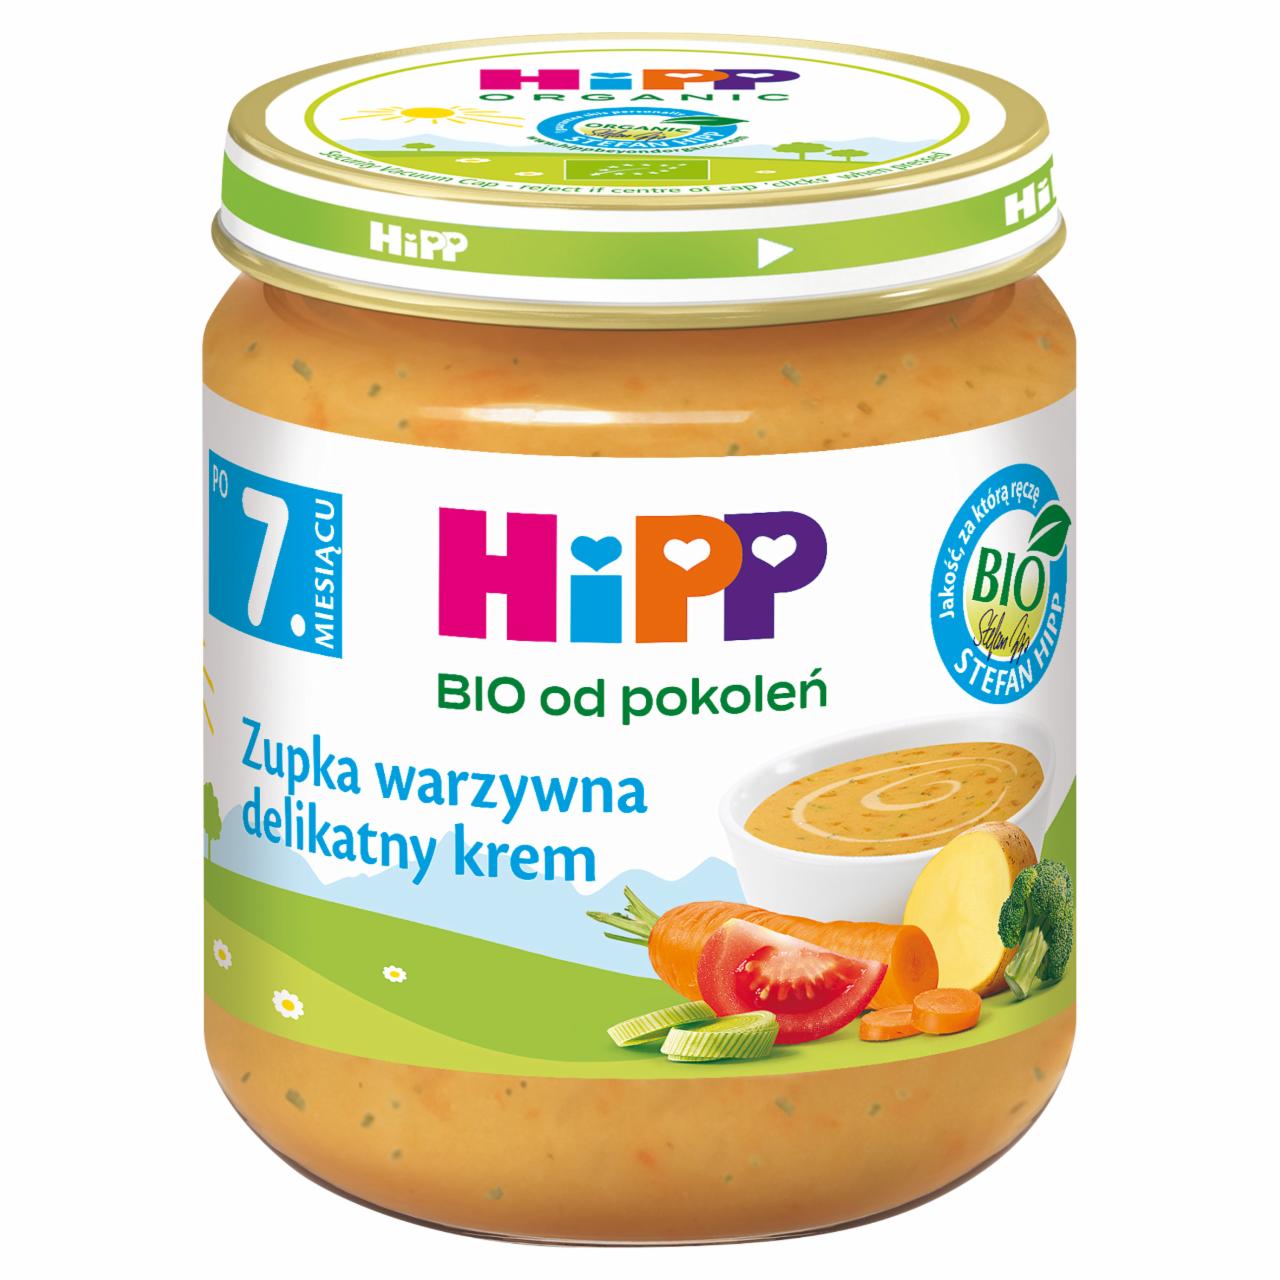 Zdjęcia - HiPP BIO Zupka warzywna delikatny krem po 7. miesiącu 200 g